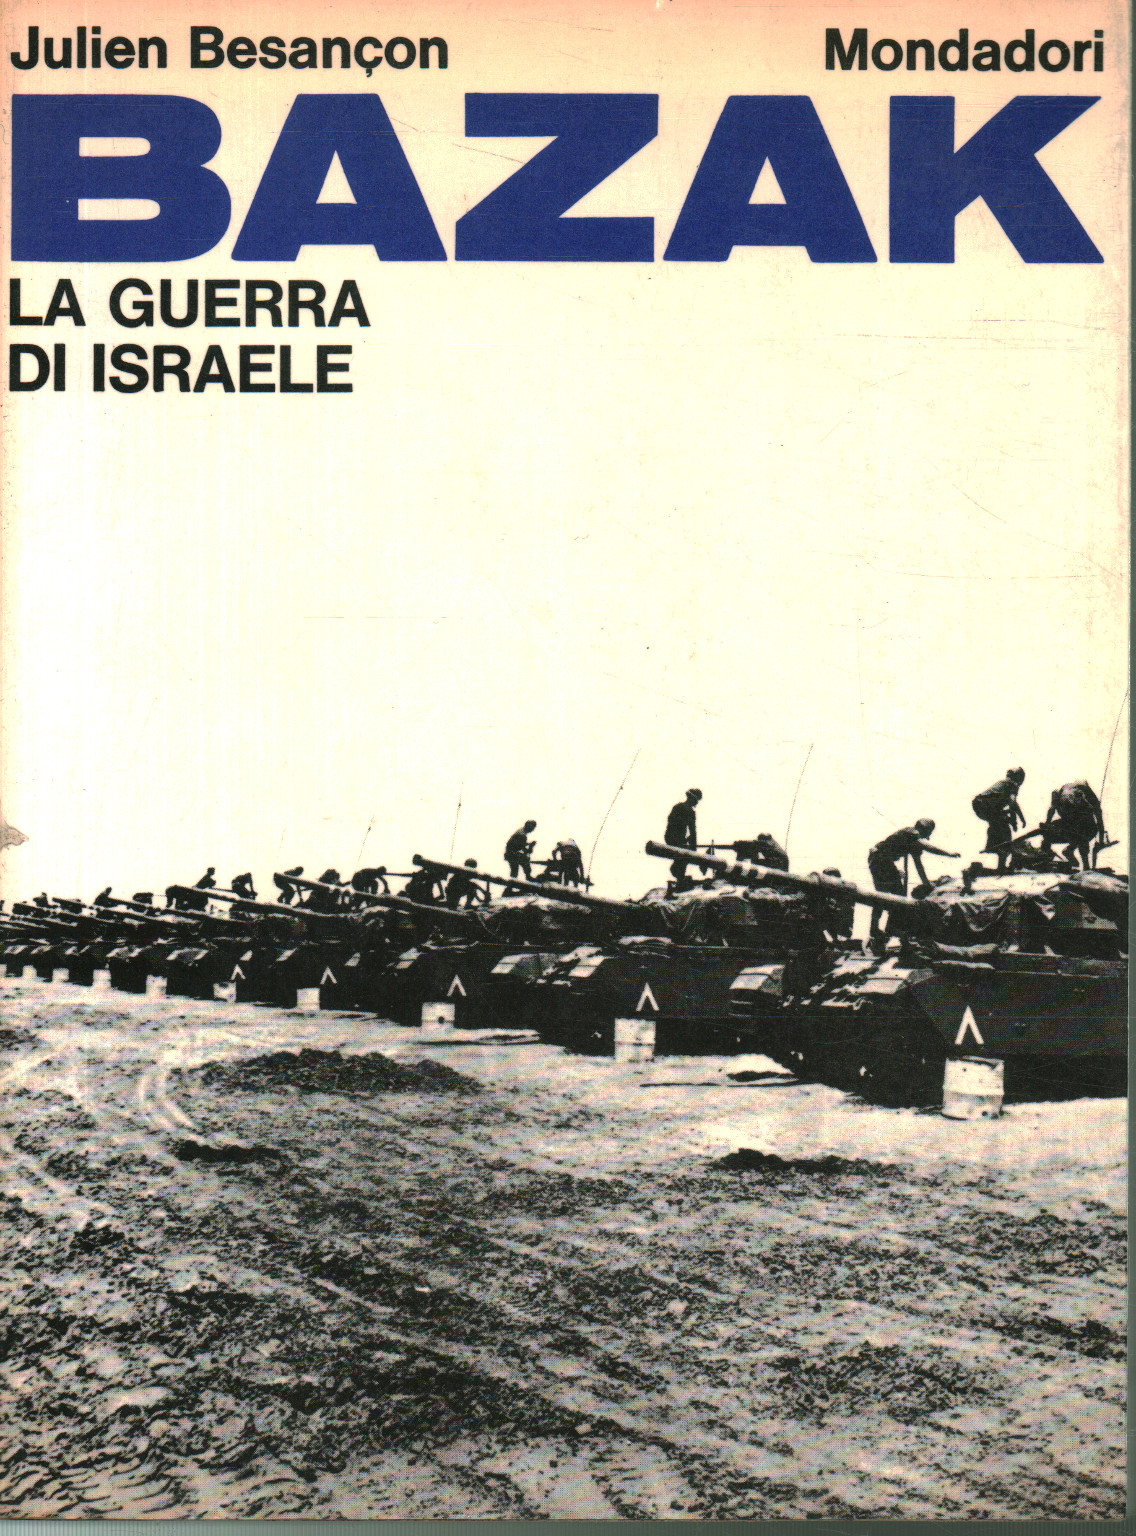 Bazak. la guerra de israel